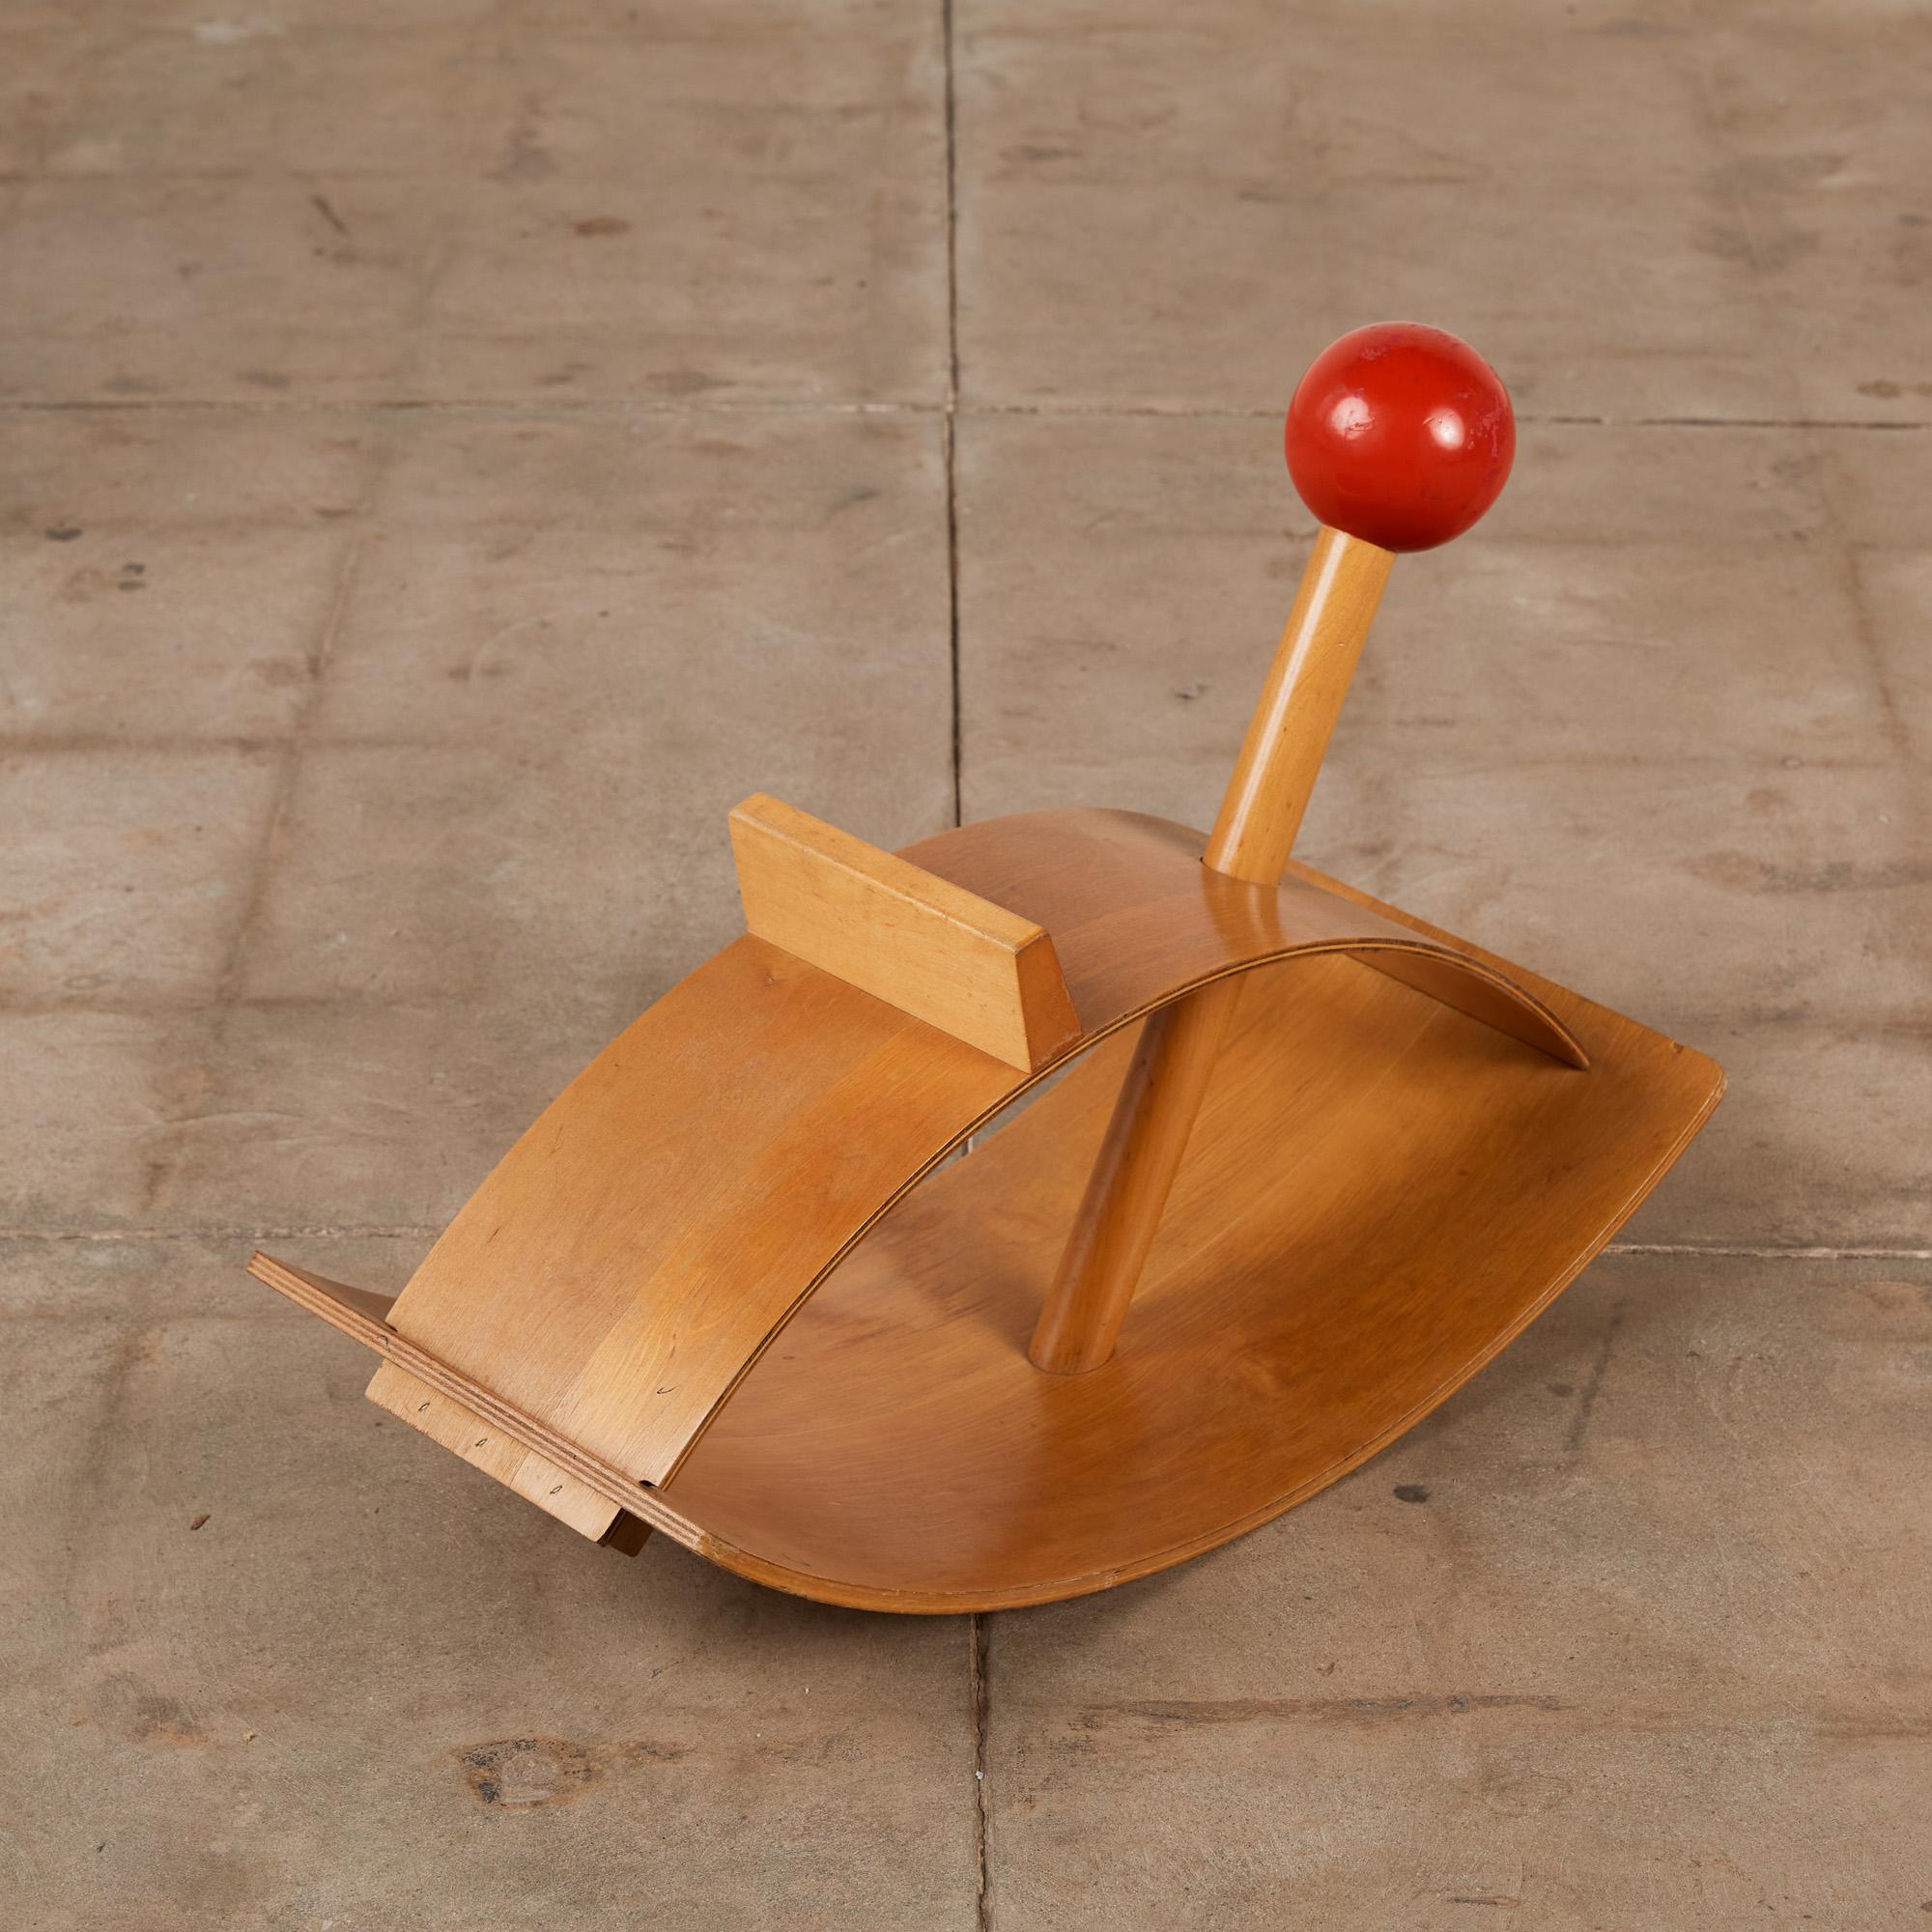 Die Wippe von Creative Playthings besteht aus leichtem, warmem Birkensperrholz. Dieser 1964 von Gloria Caranica entworfene Schaukelpferd-Vorgänger ist eine perfekte Synthese aus Material, Design und Funktion. Die geschwungene Ober- und Unterseite